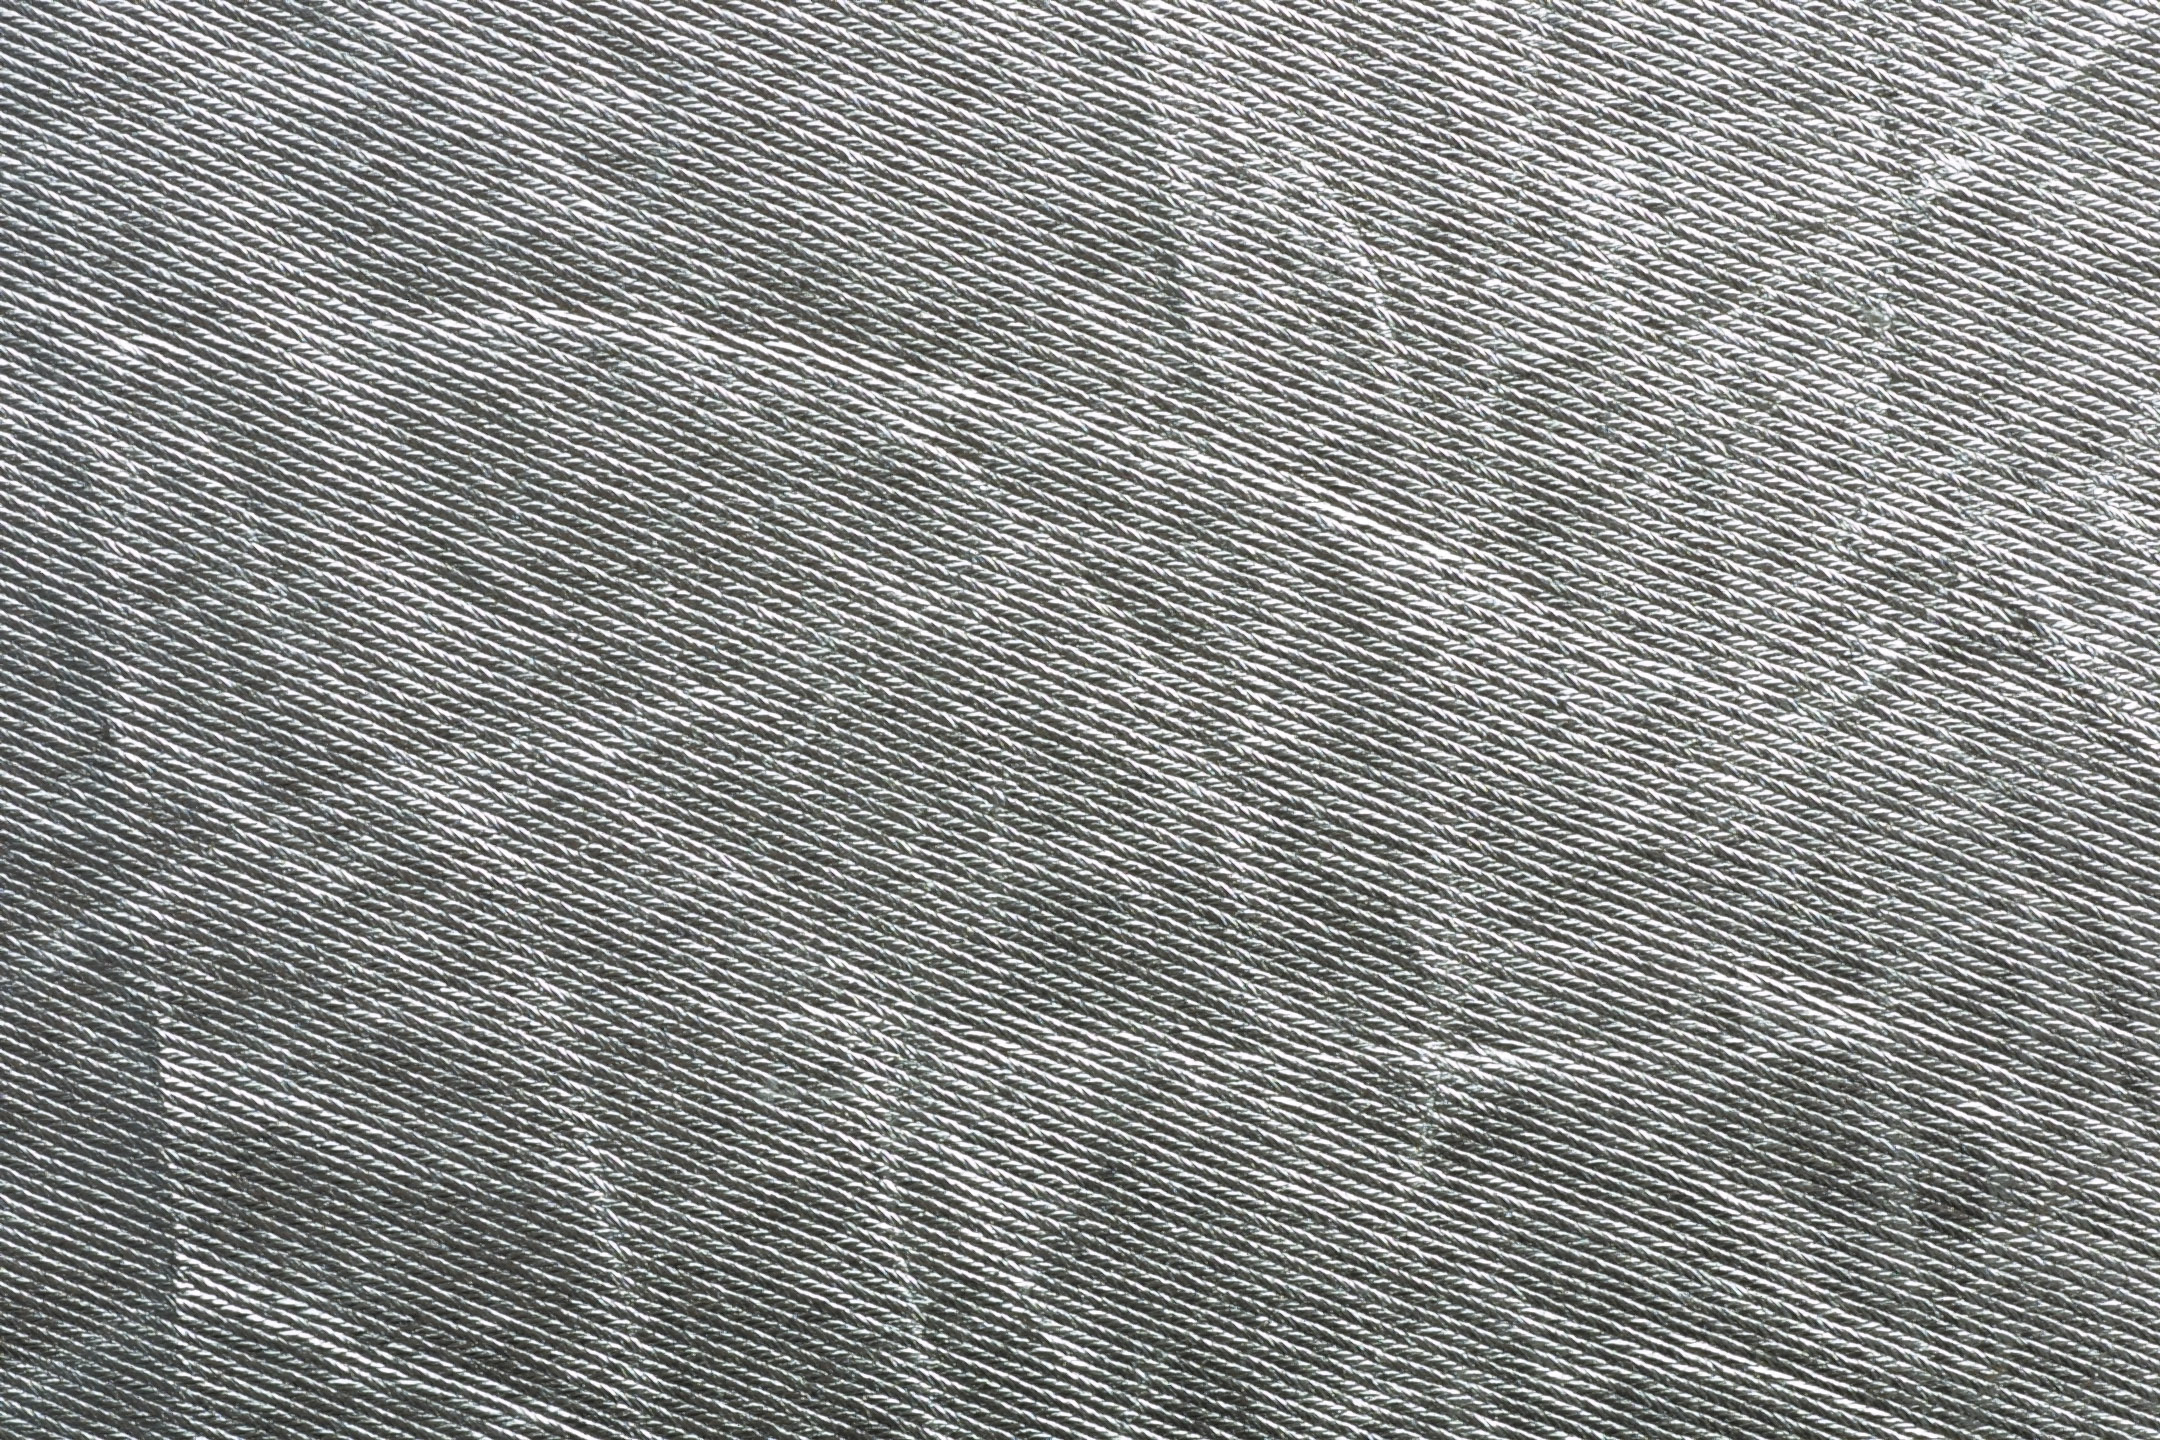 Silver Textured Wallpaper Grasscloth